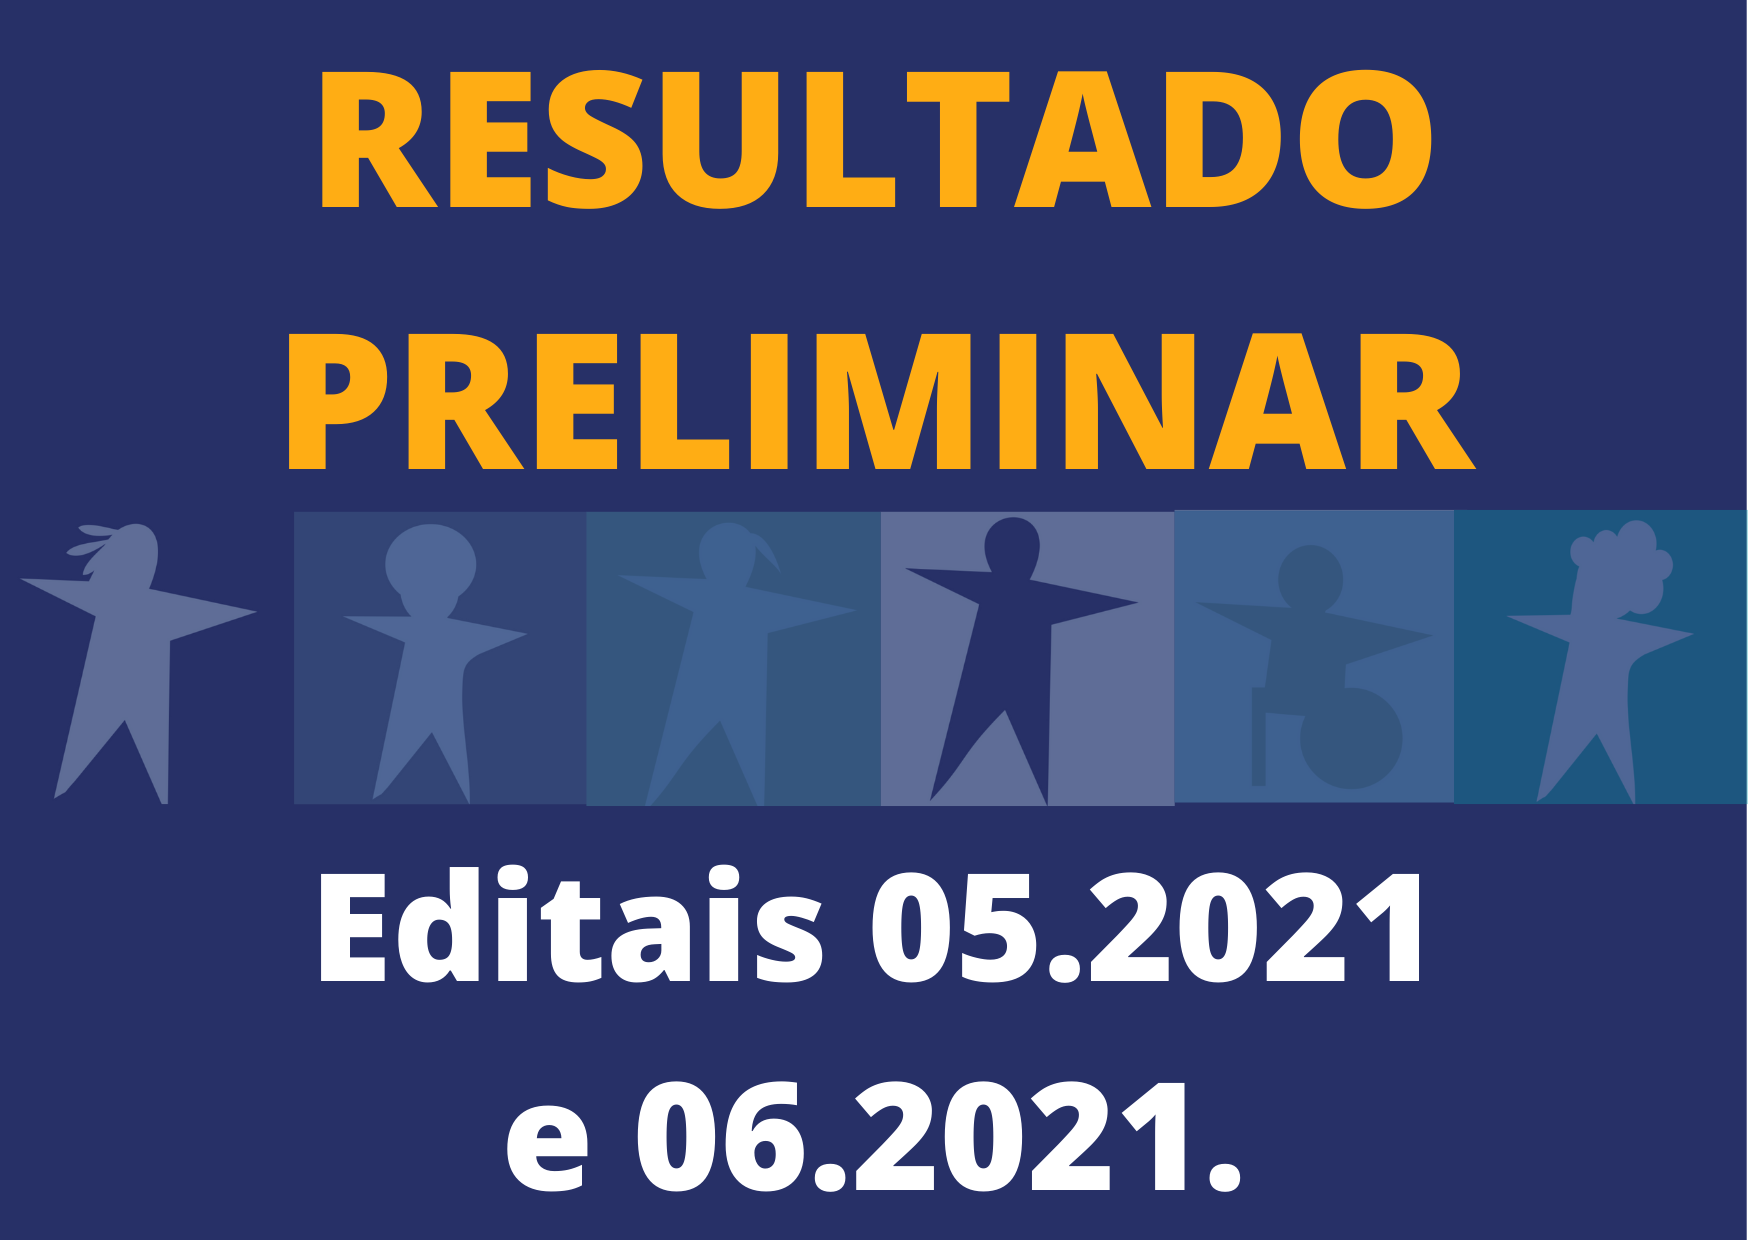 RESULTADO PRELIMINAR – Editais 05.2021 e 06.2021.